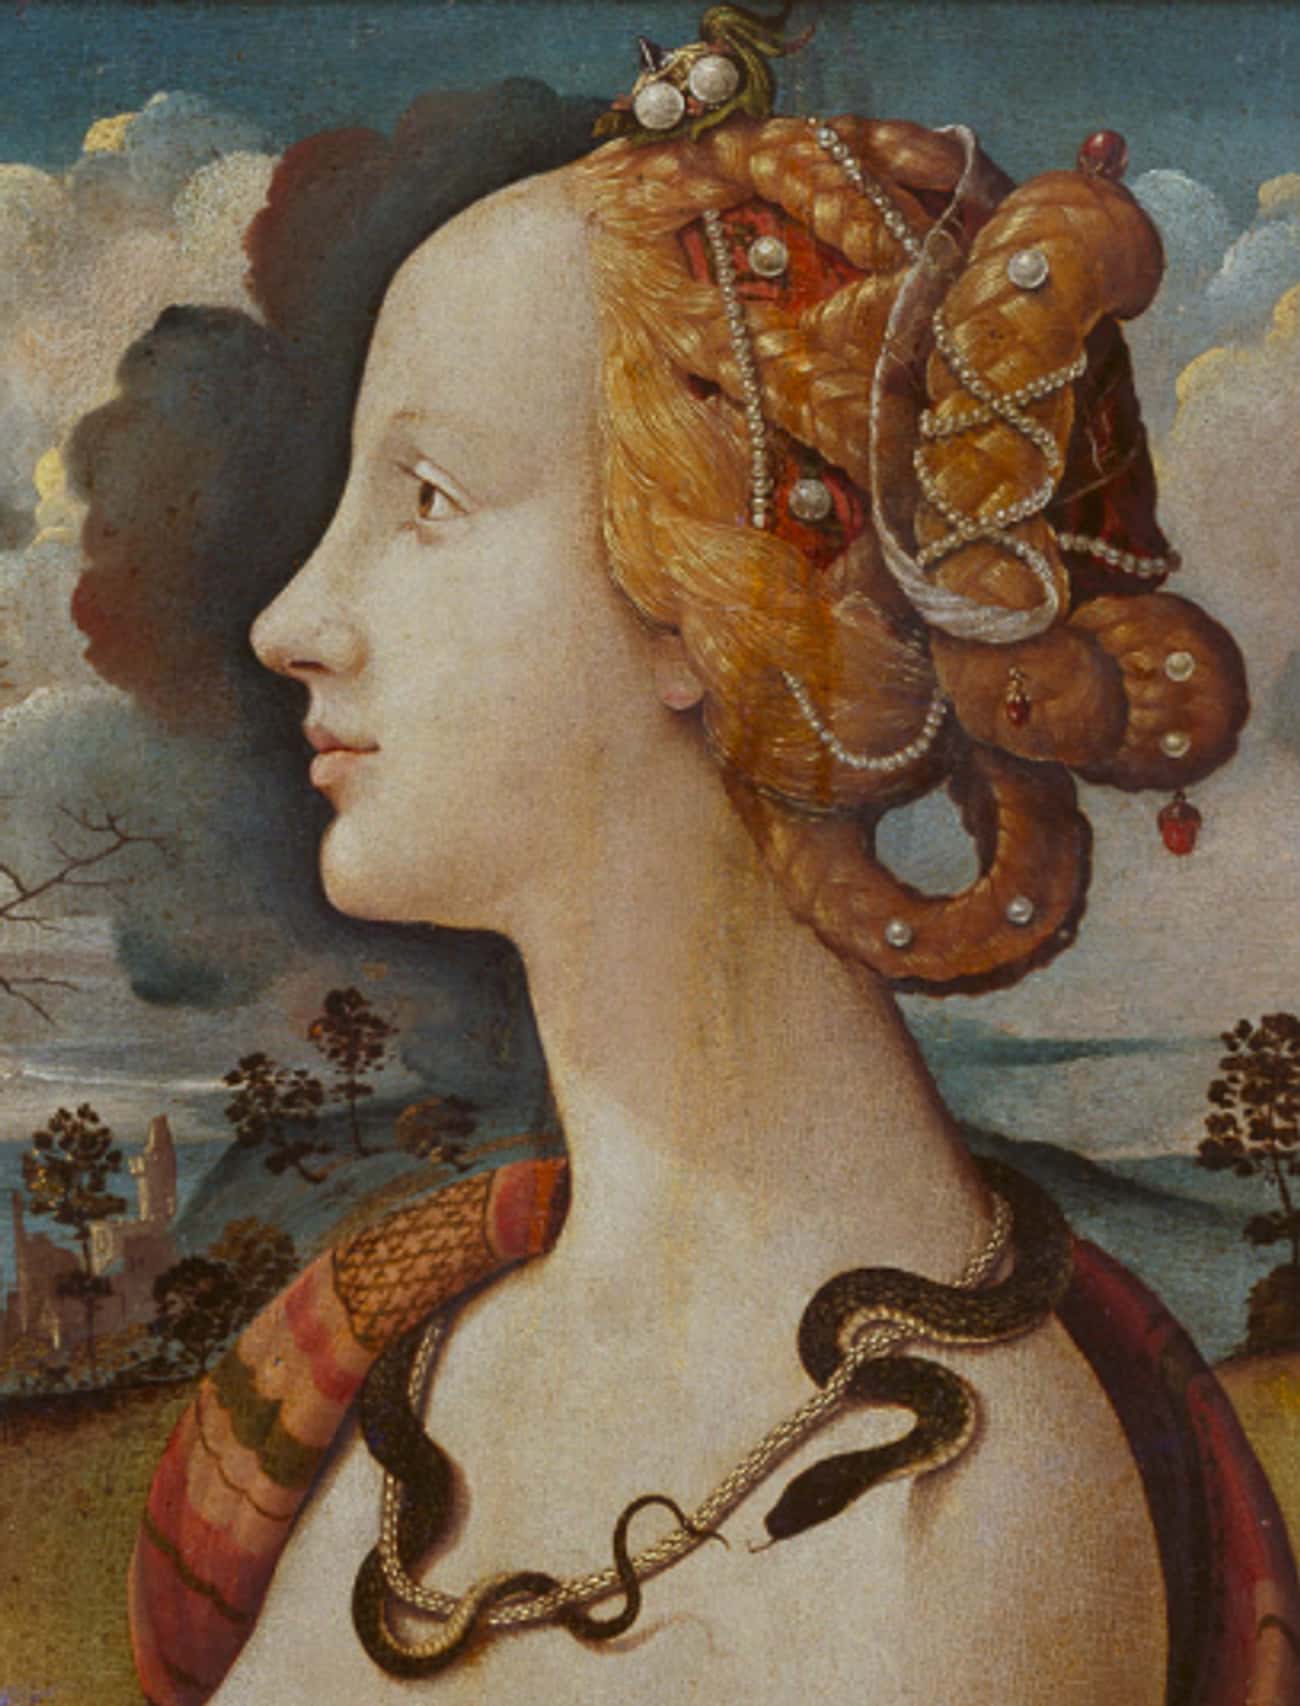 Simonetta Vespucci's Curvy Figure Was An Inspiration To Botticelli